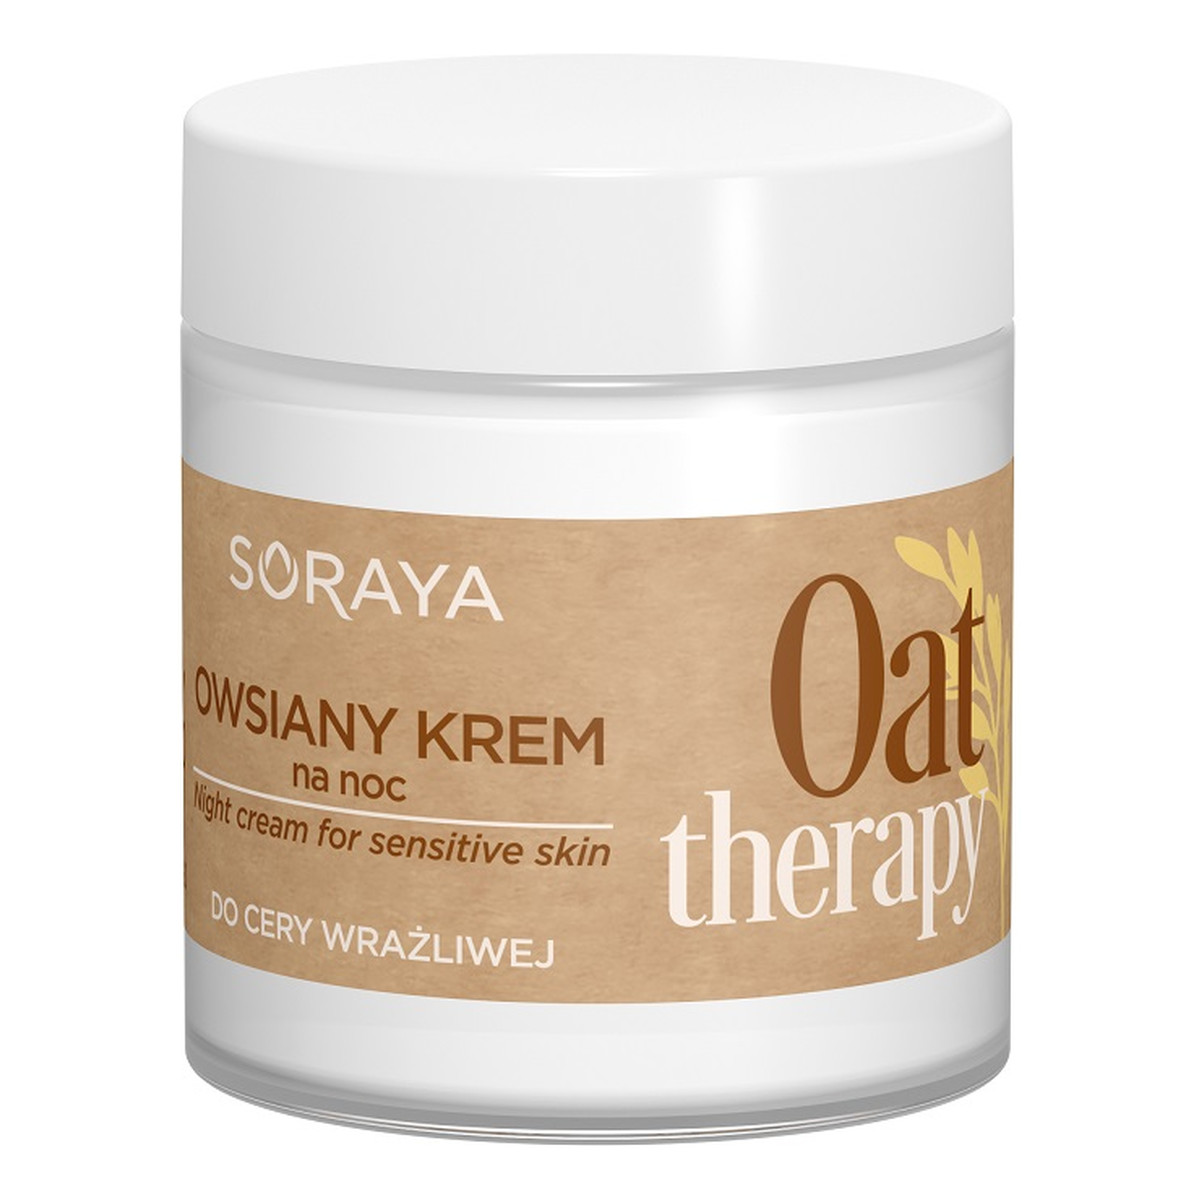 Soraya Oat Therapy owsiany Krem do twarzy na noc do cery wrażliwej 75ml